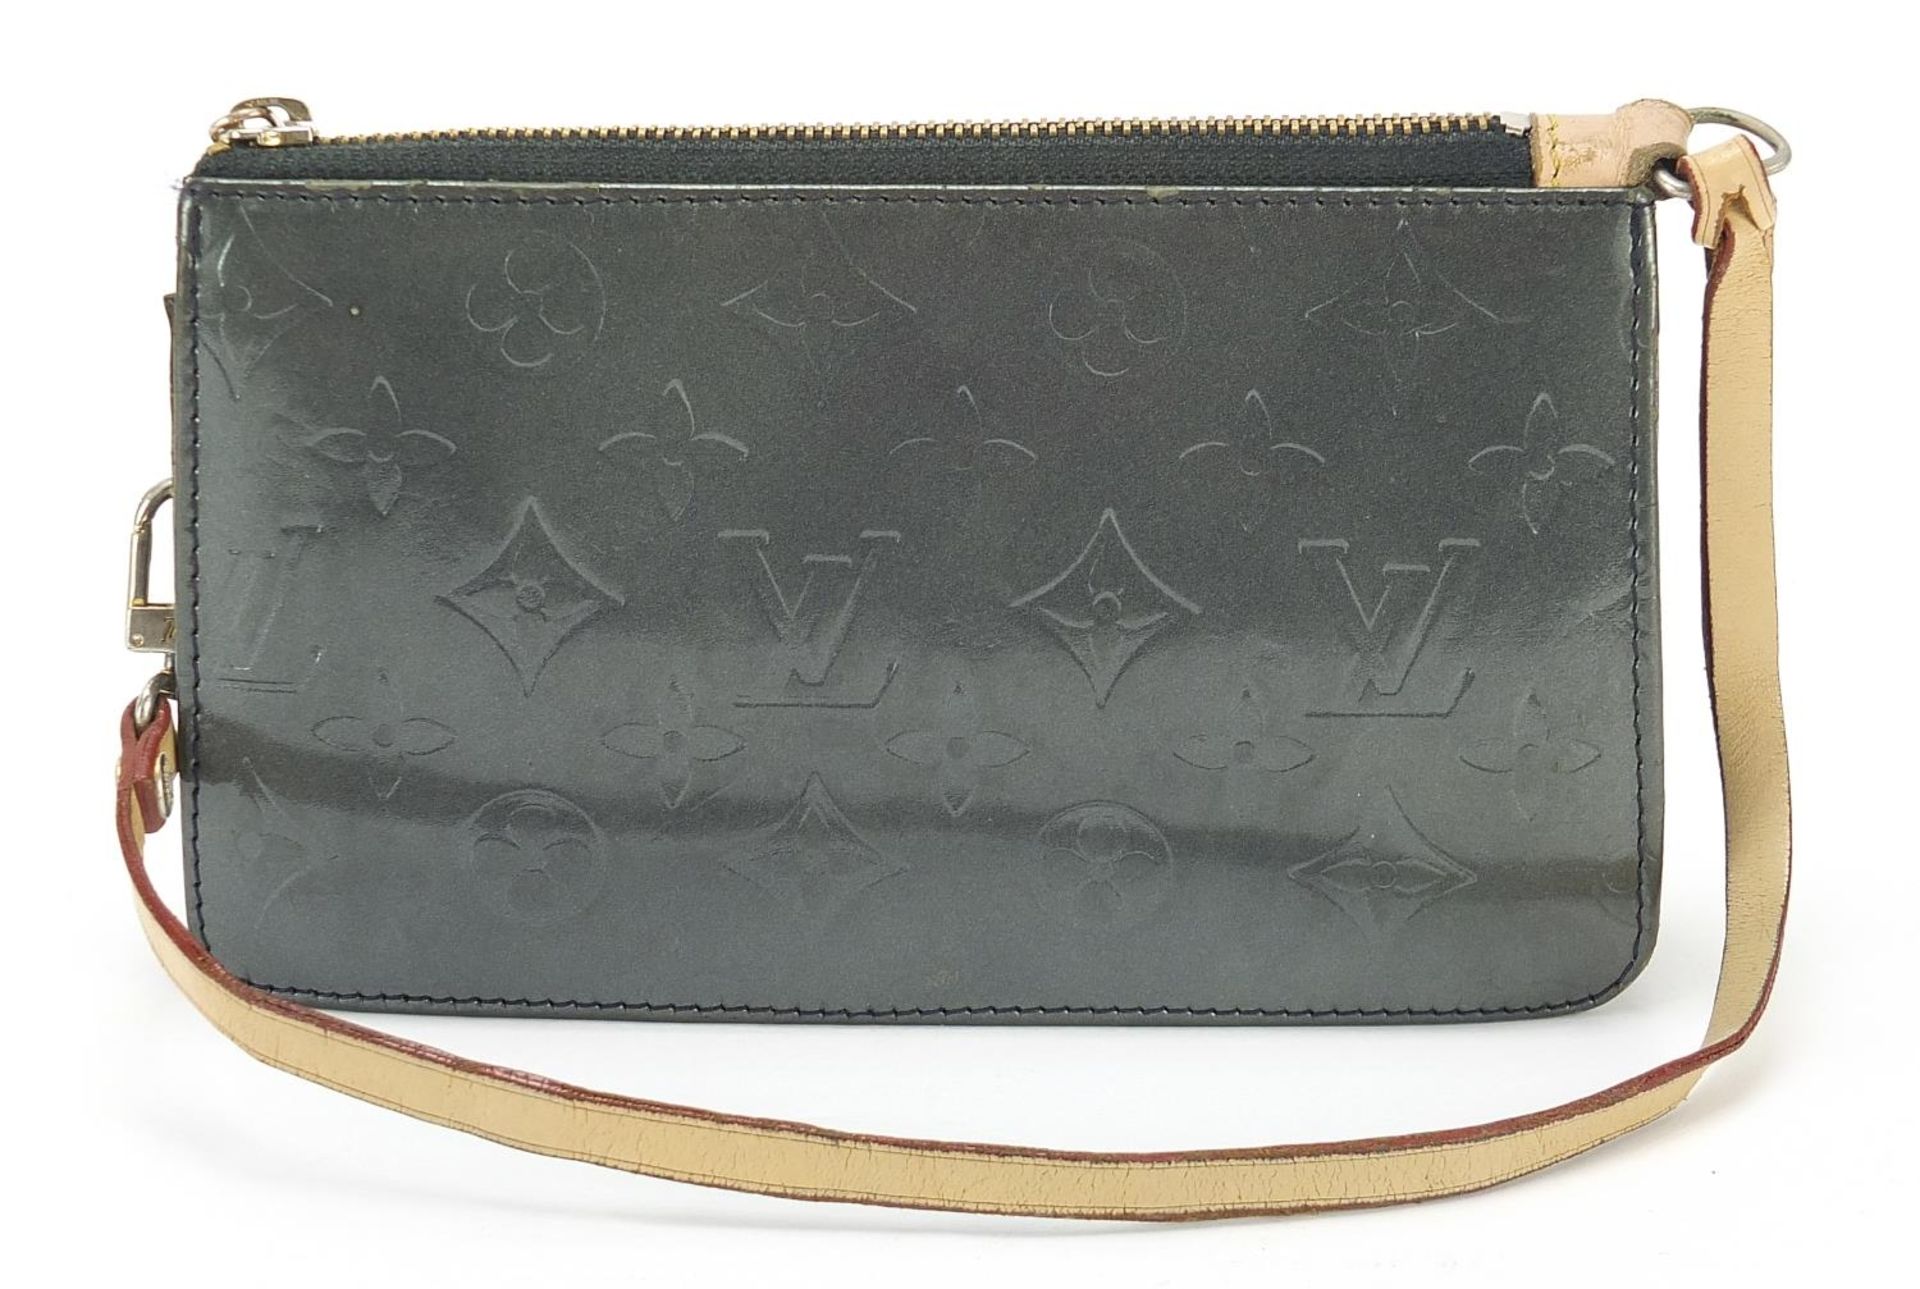 Louis Vuitton monogrammed handbag, 20cm wide - Bild 3 aus 5